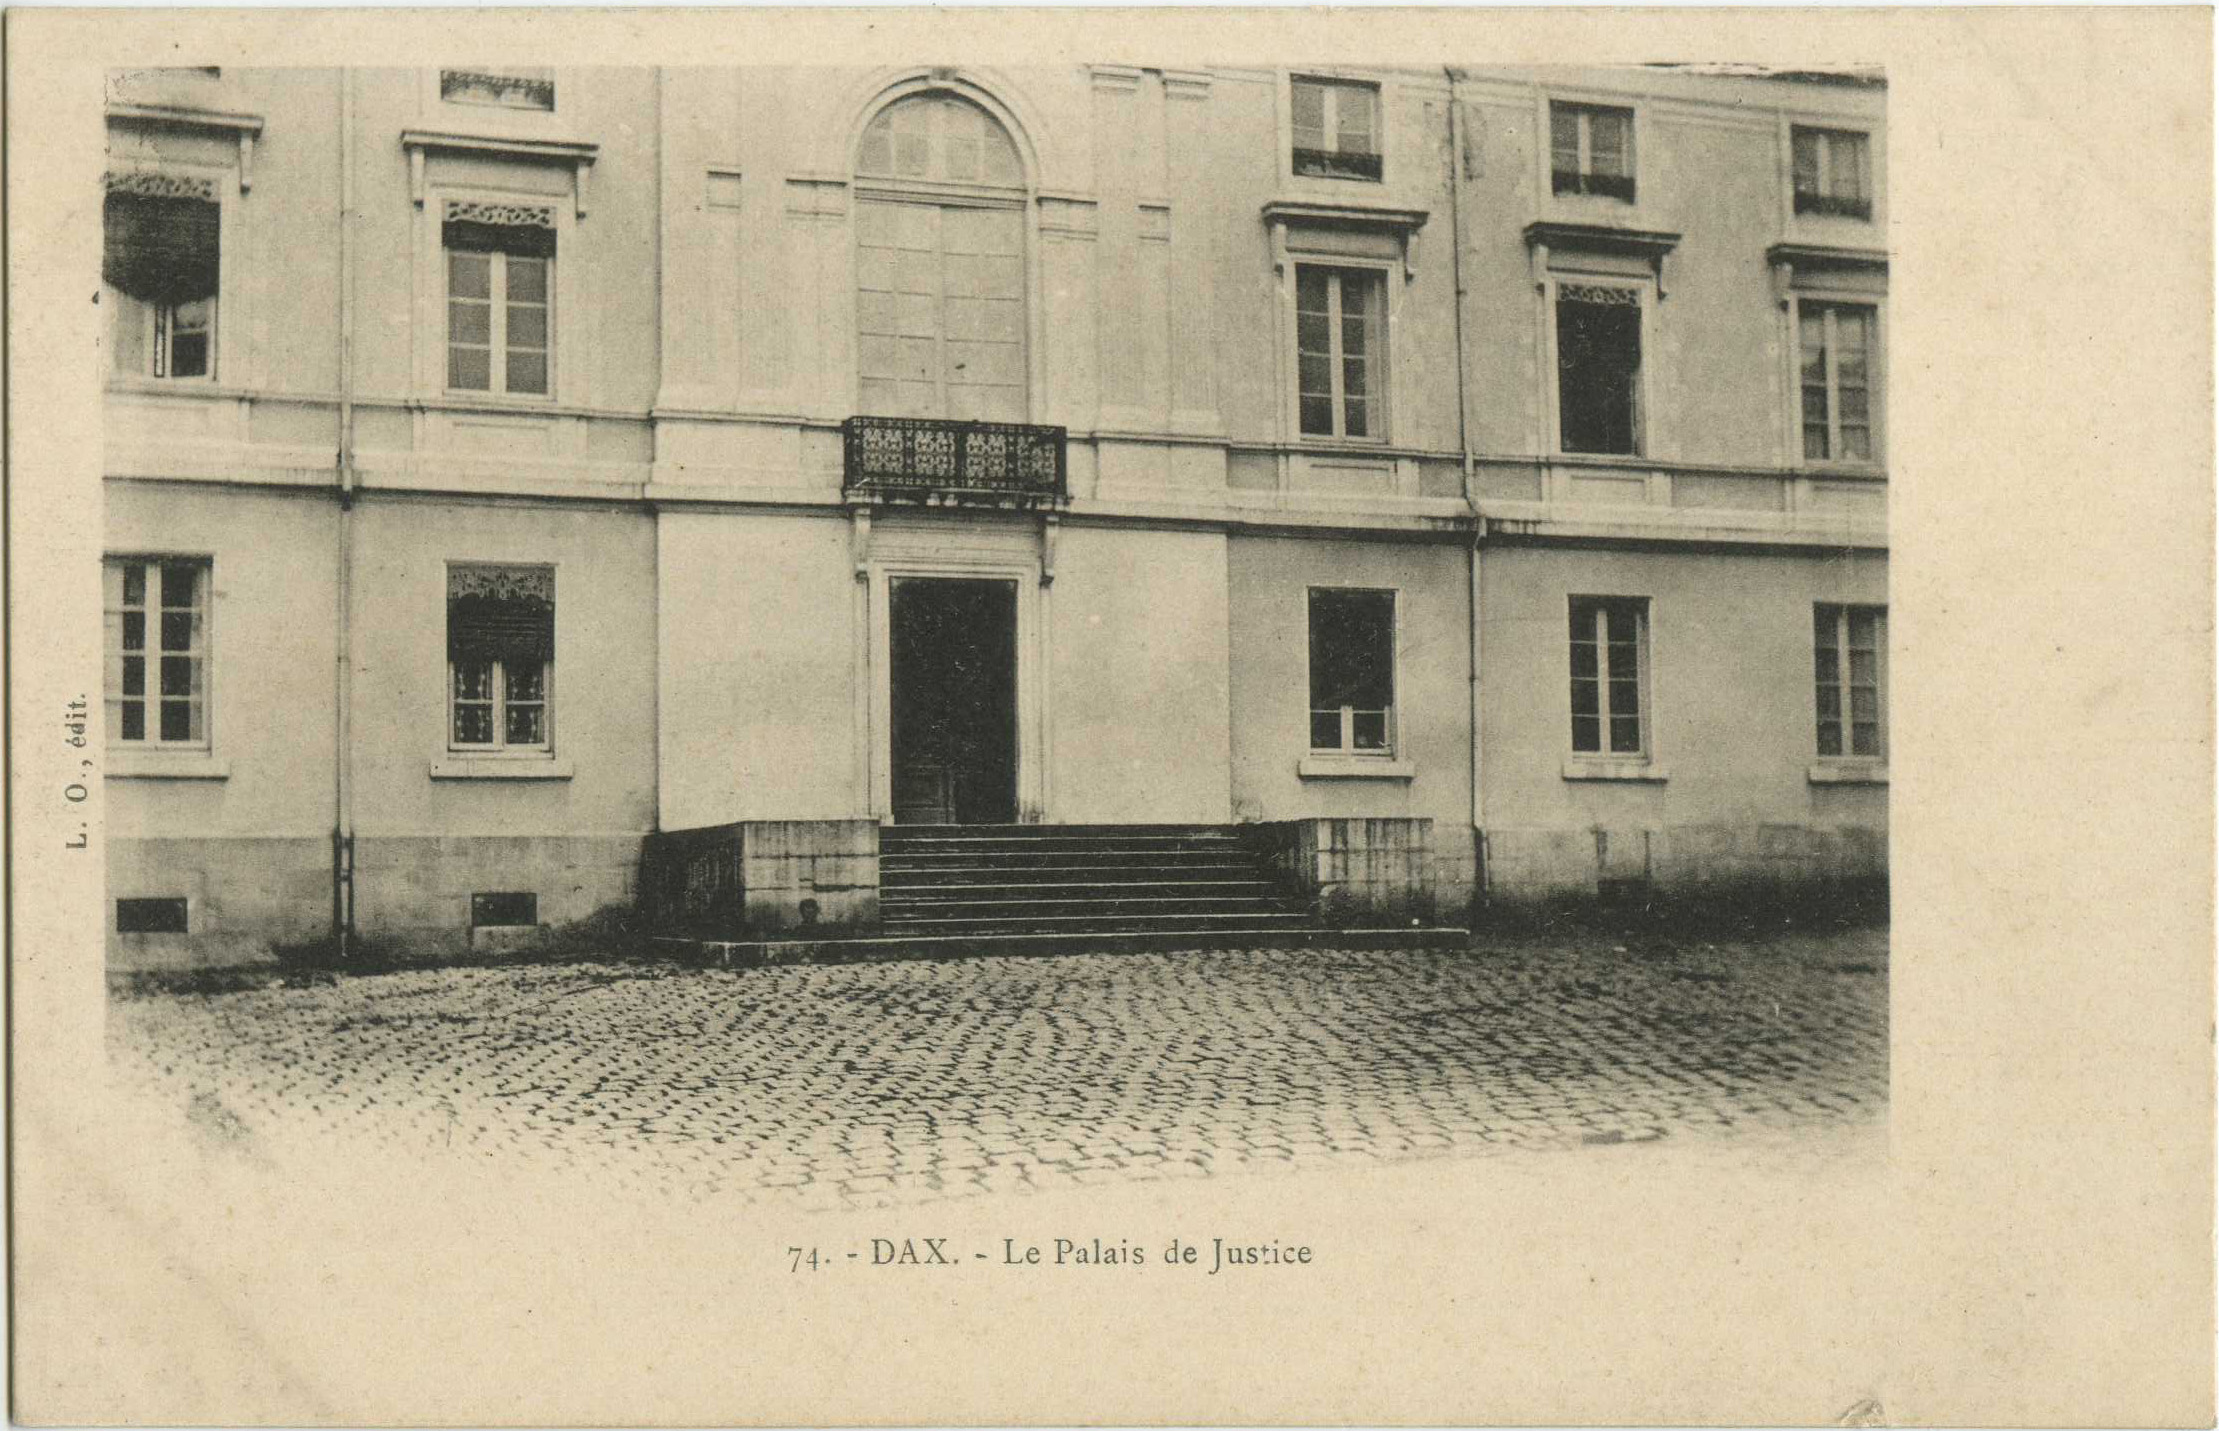 Dax - Le Palais de Justice